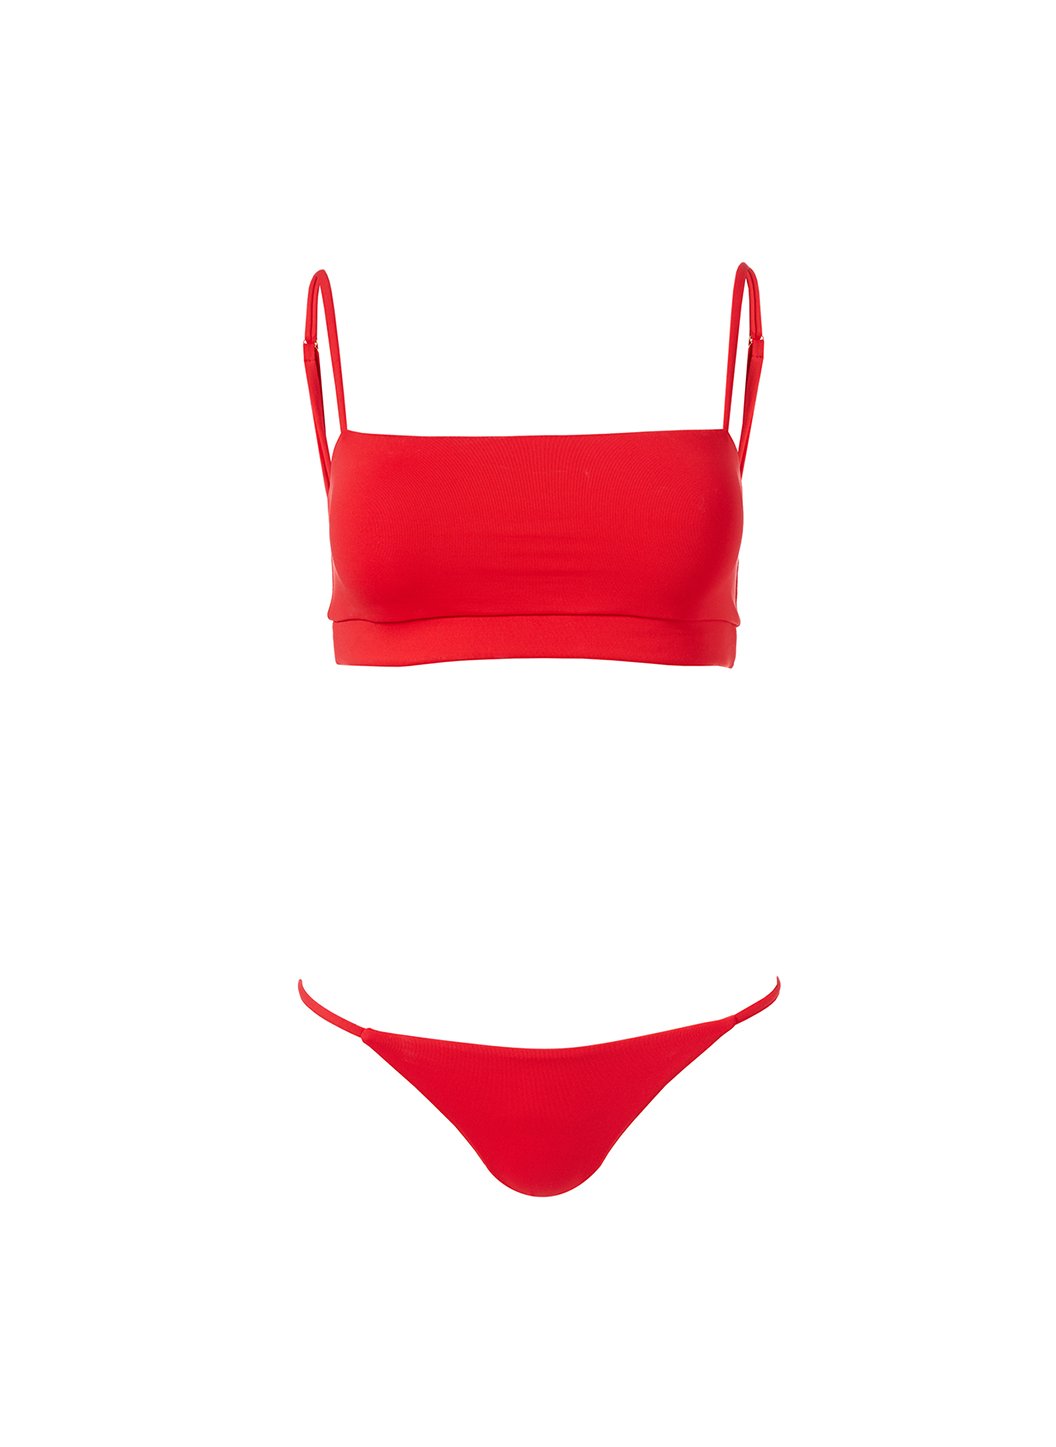 elba-red-skinny-strap-over-the-shoulder-bikini